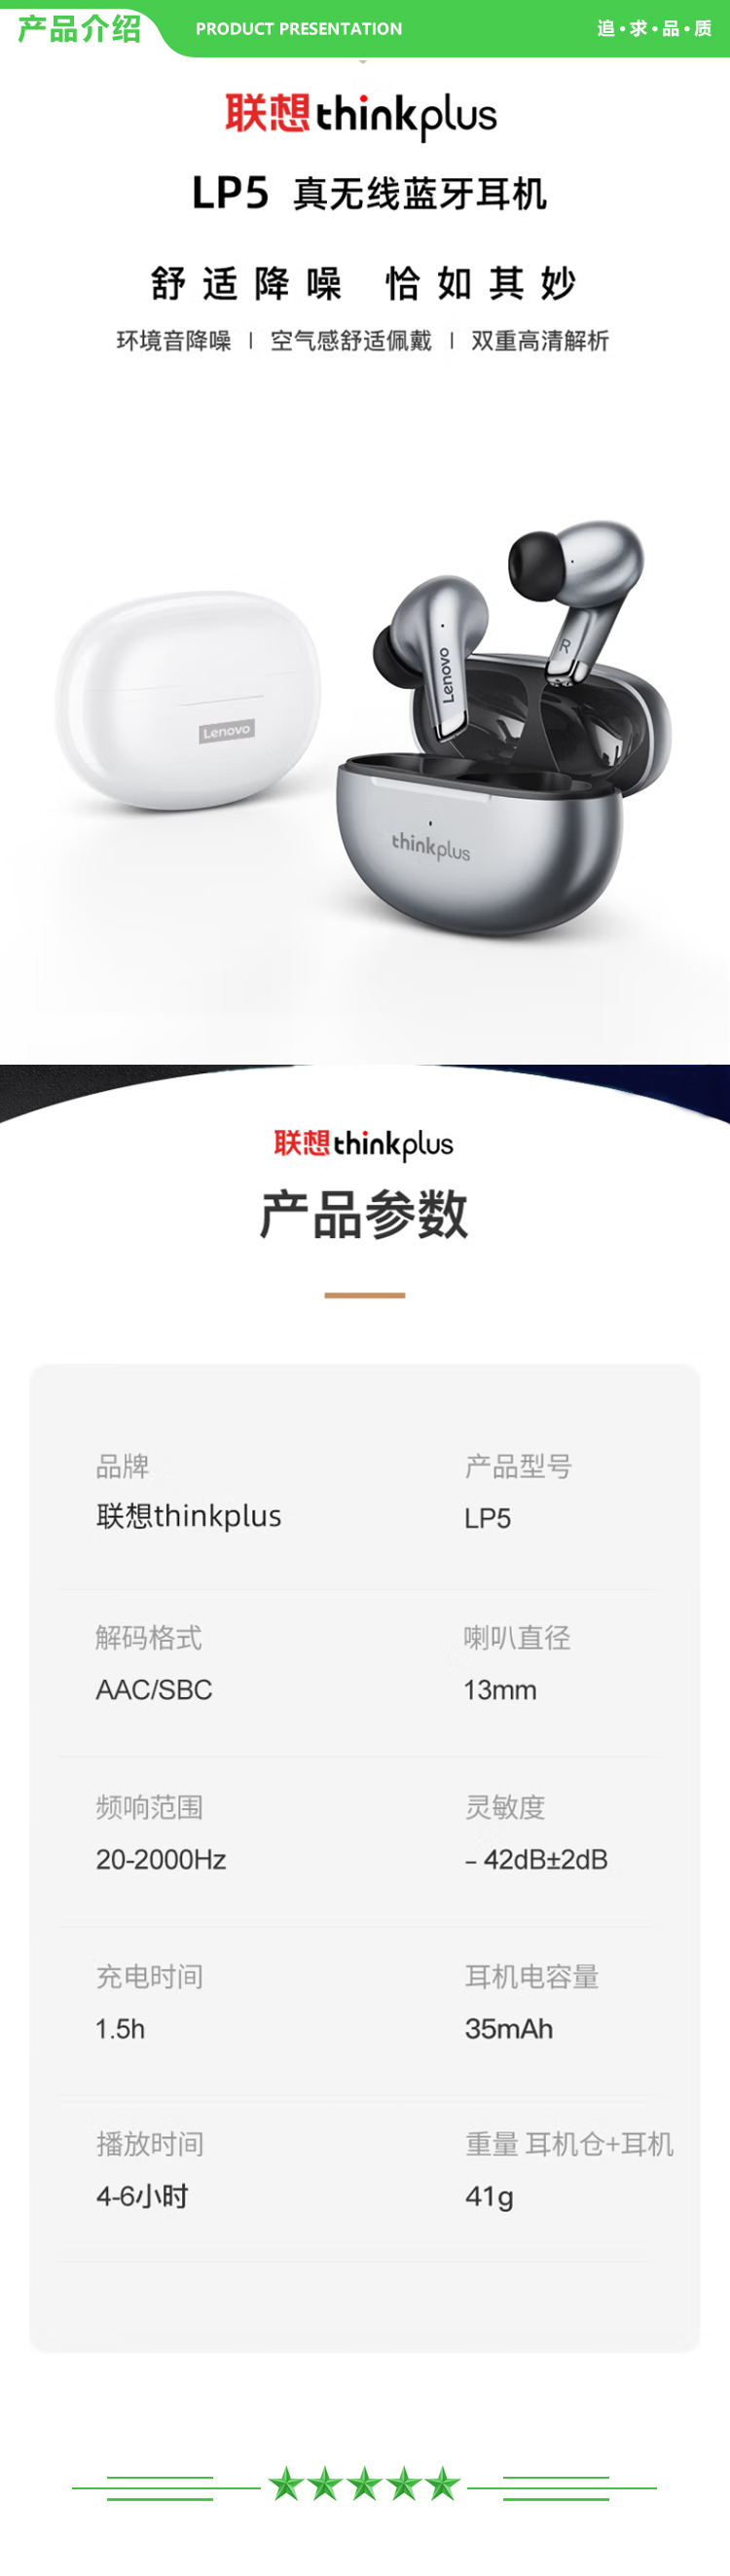 联想 Lenovo thinkplus LP5 白色 真无线蓝牙耳机 入耳式跑步运动高清通话降噪音乐耳机通用苹果华为小米手机 .jpg